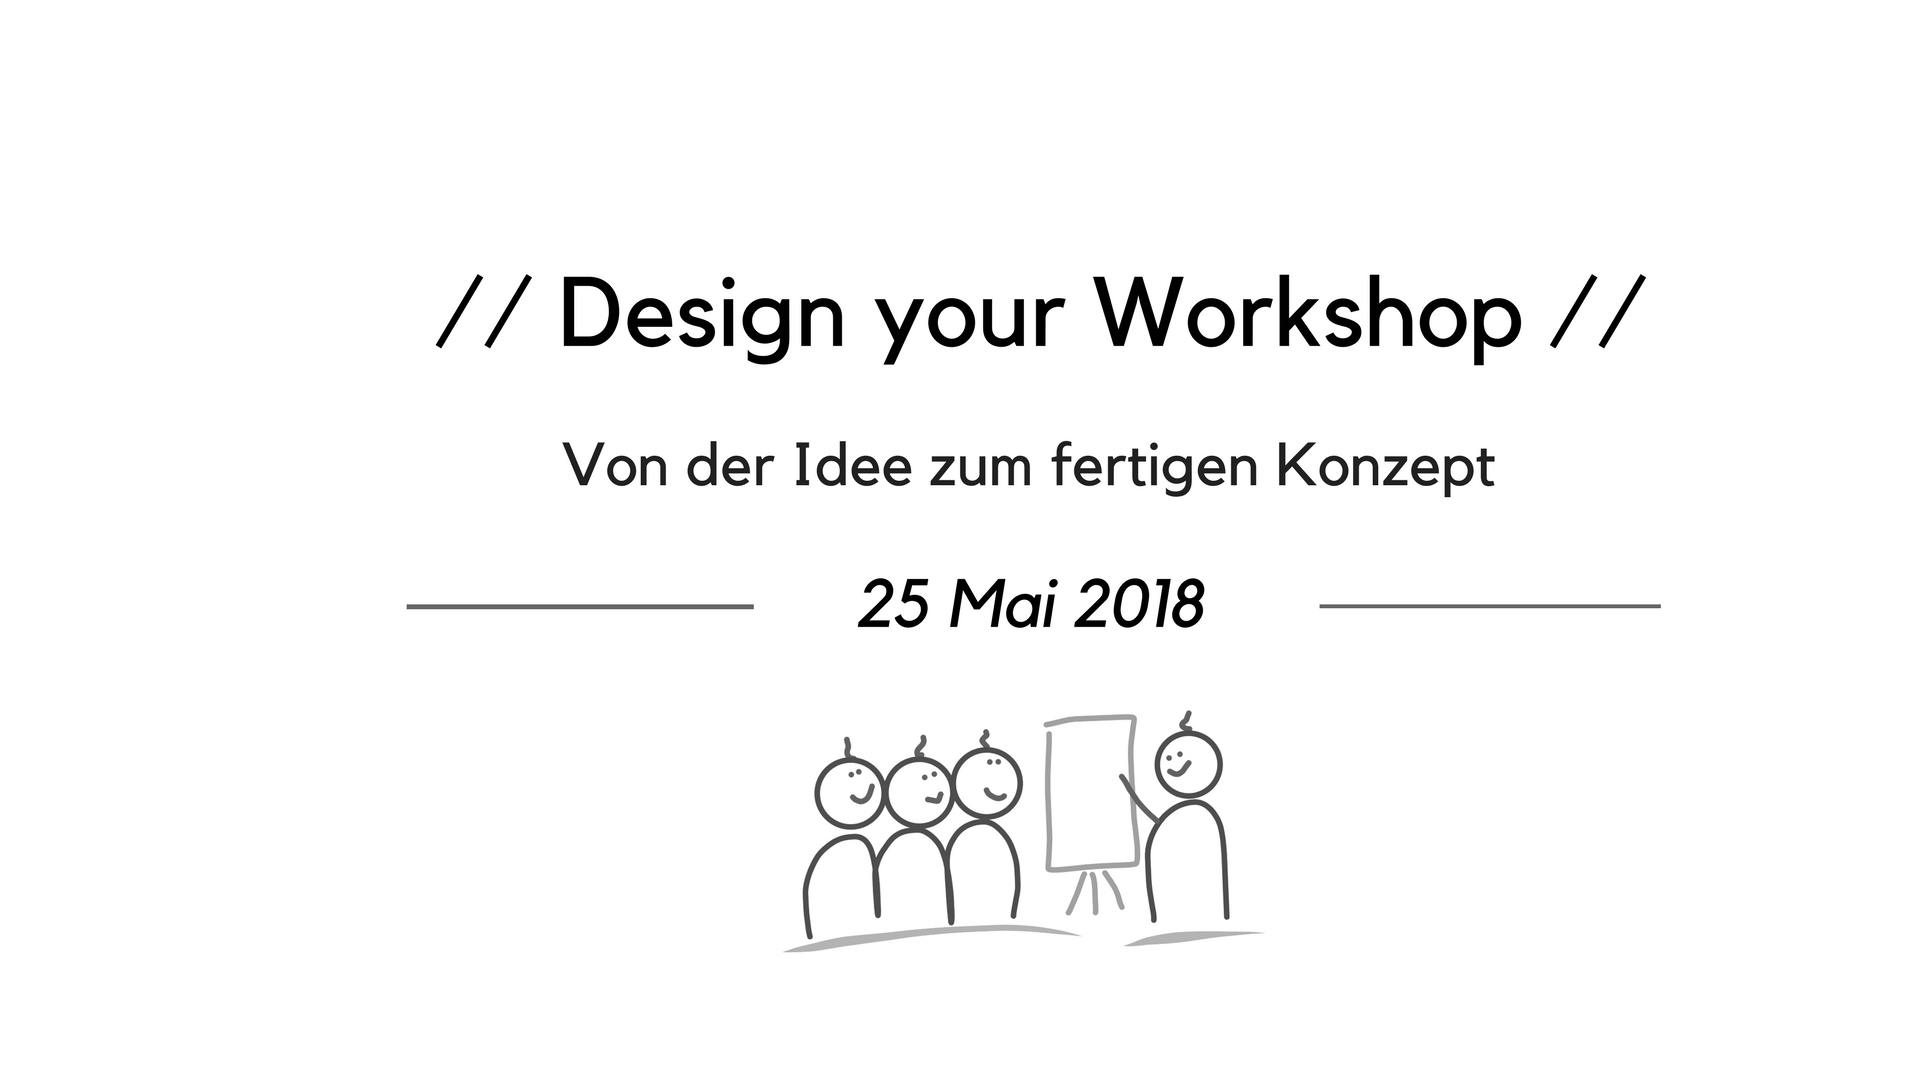 Design your Workshop - Von der Idee zum fertigen Konzept